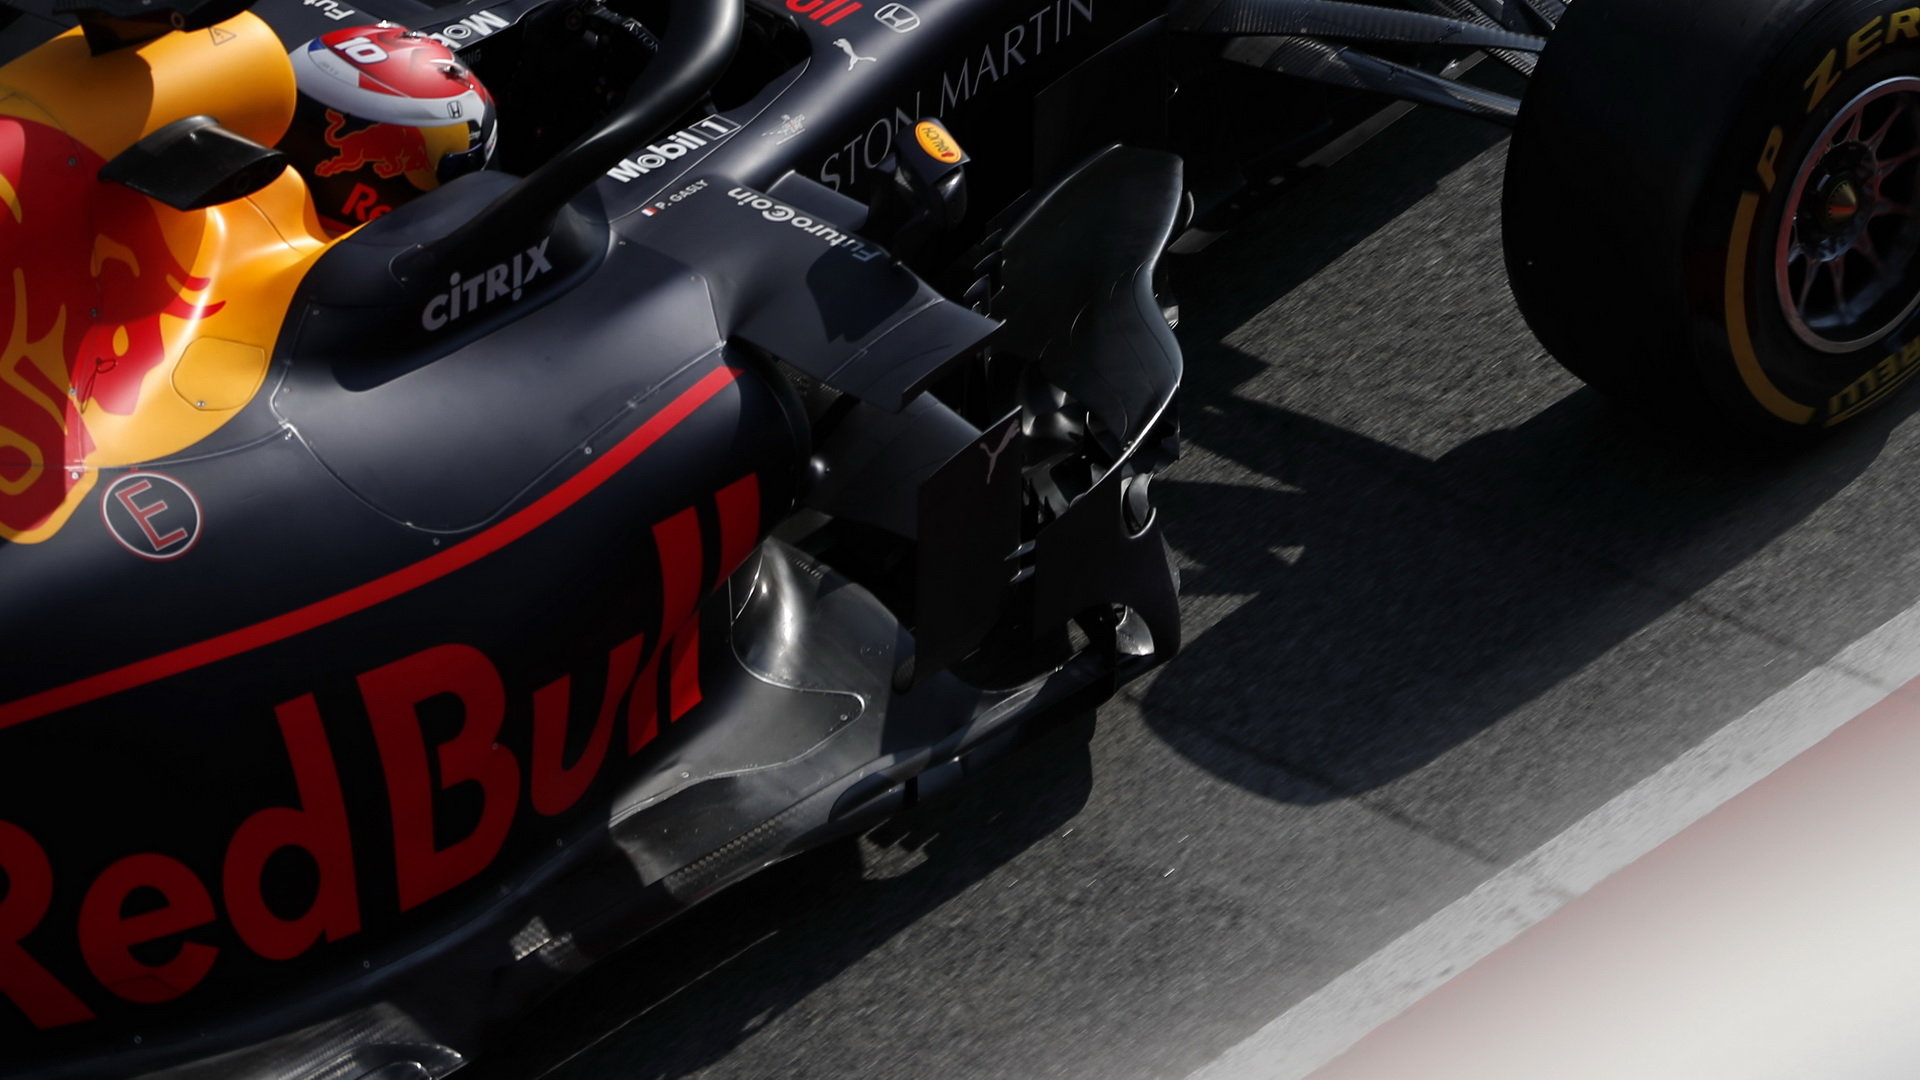 Pierre Gasly v novém voze Red Bull RB15 - Honda při druhém dni testů v Barceloně